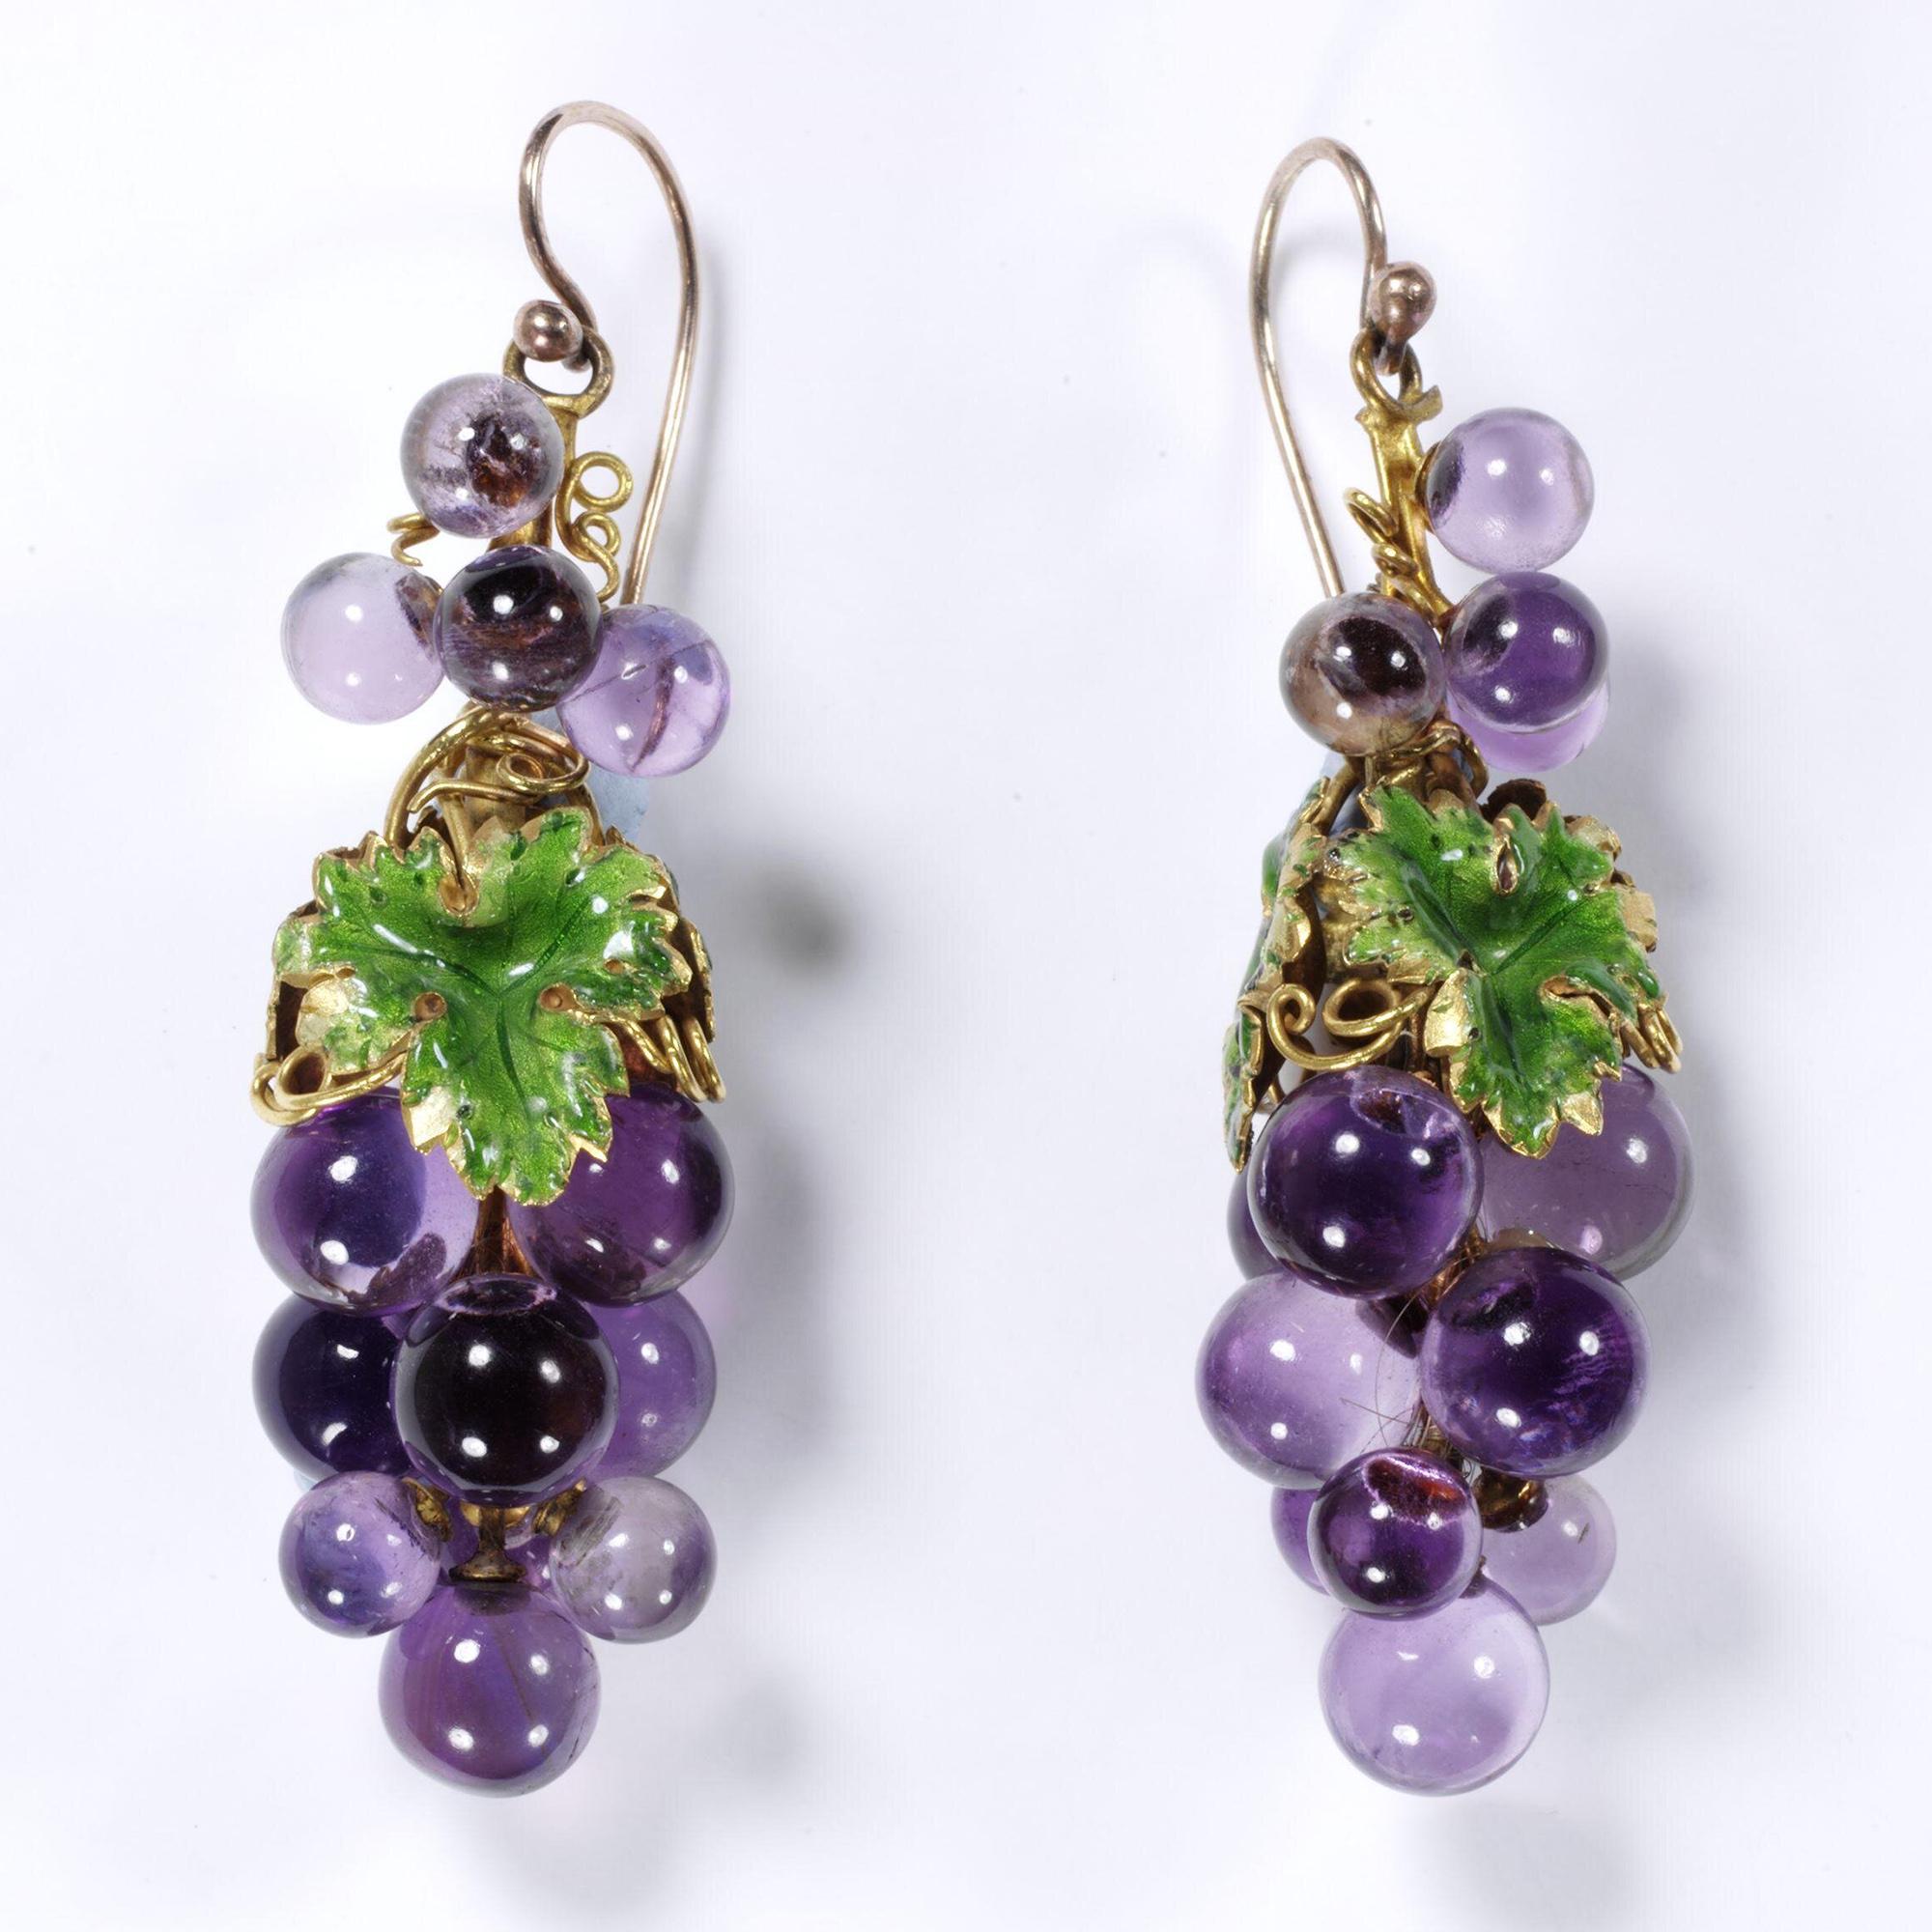 Amethyst earrings shaped like grapes. France, 1840-1851.jpeg